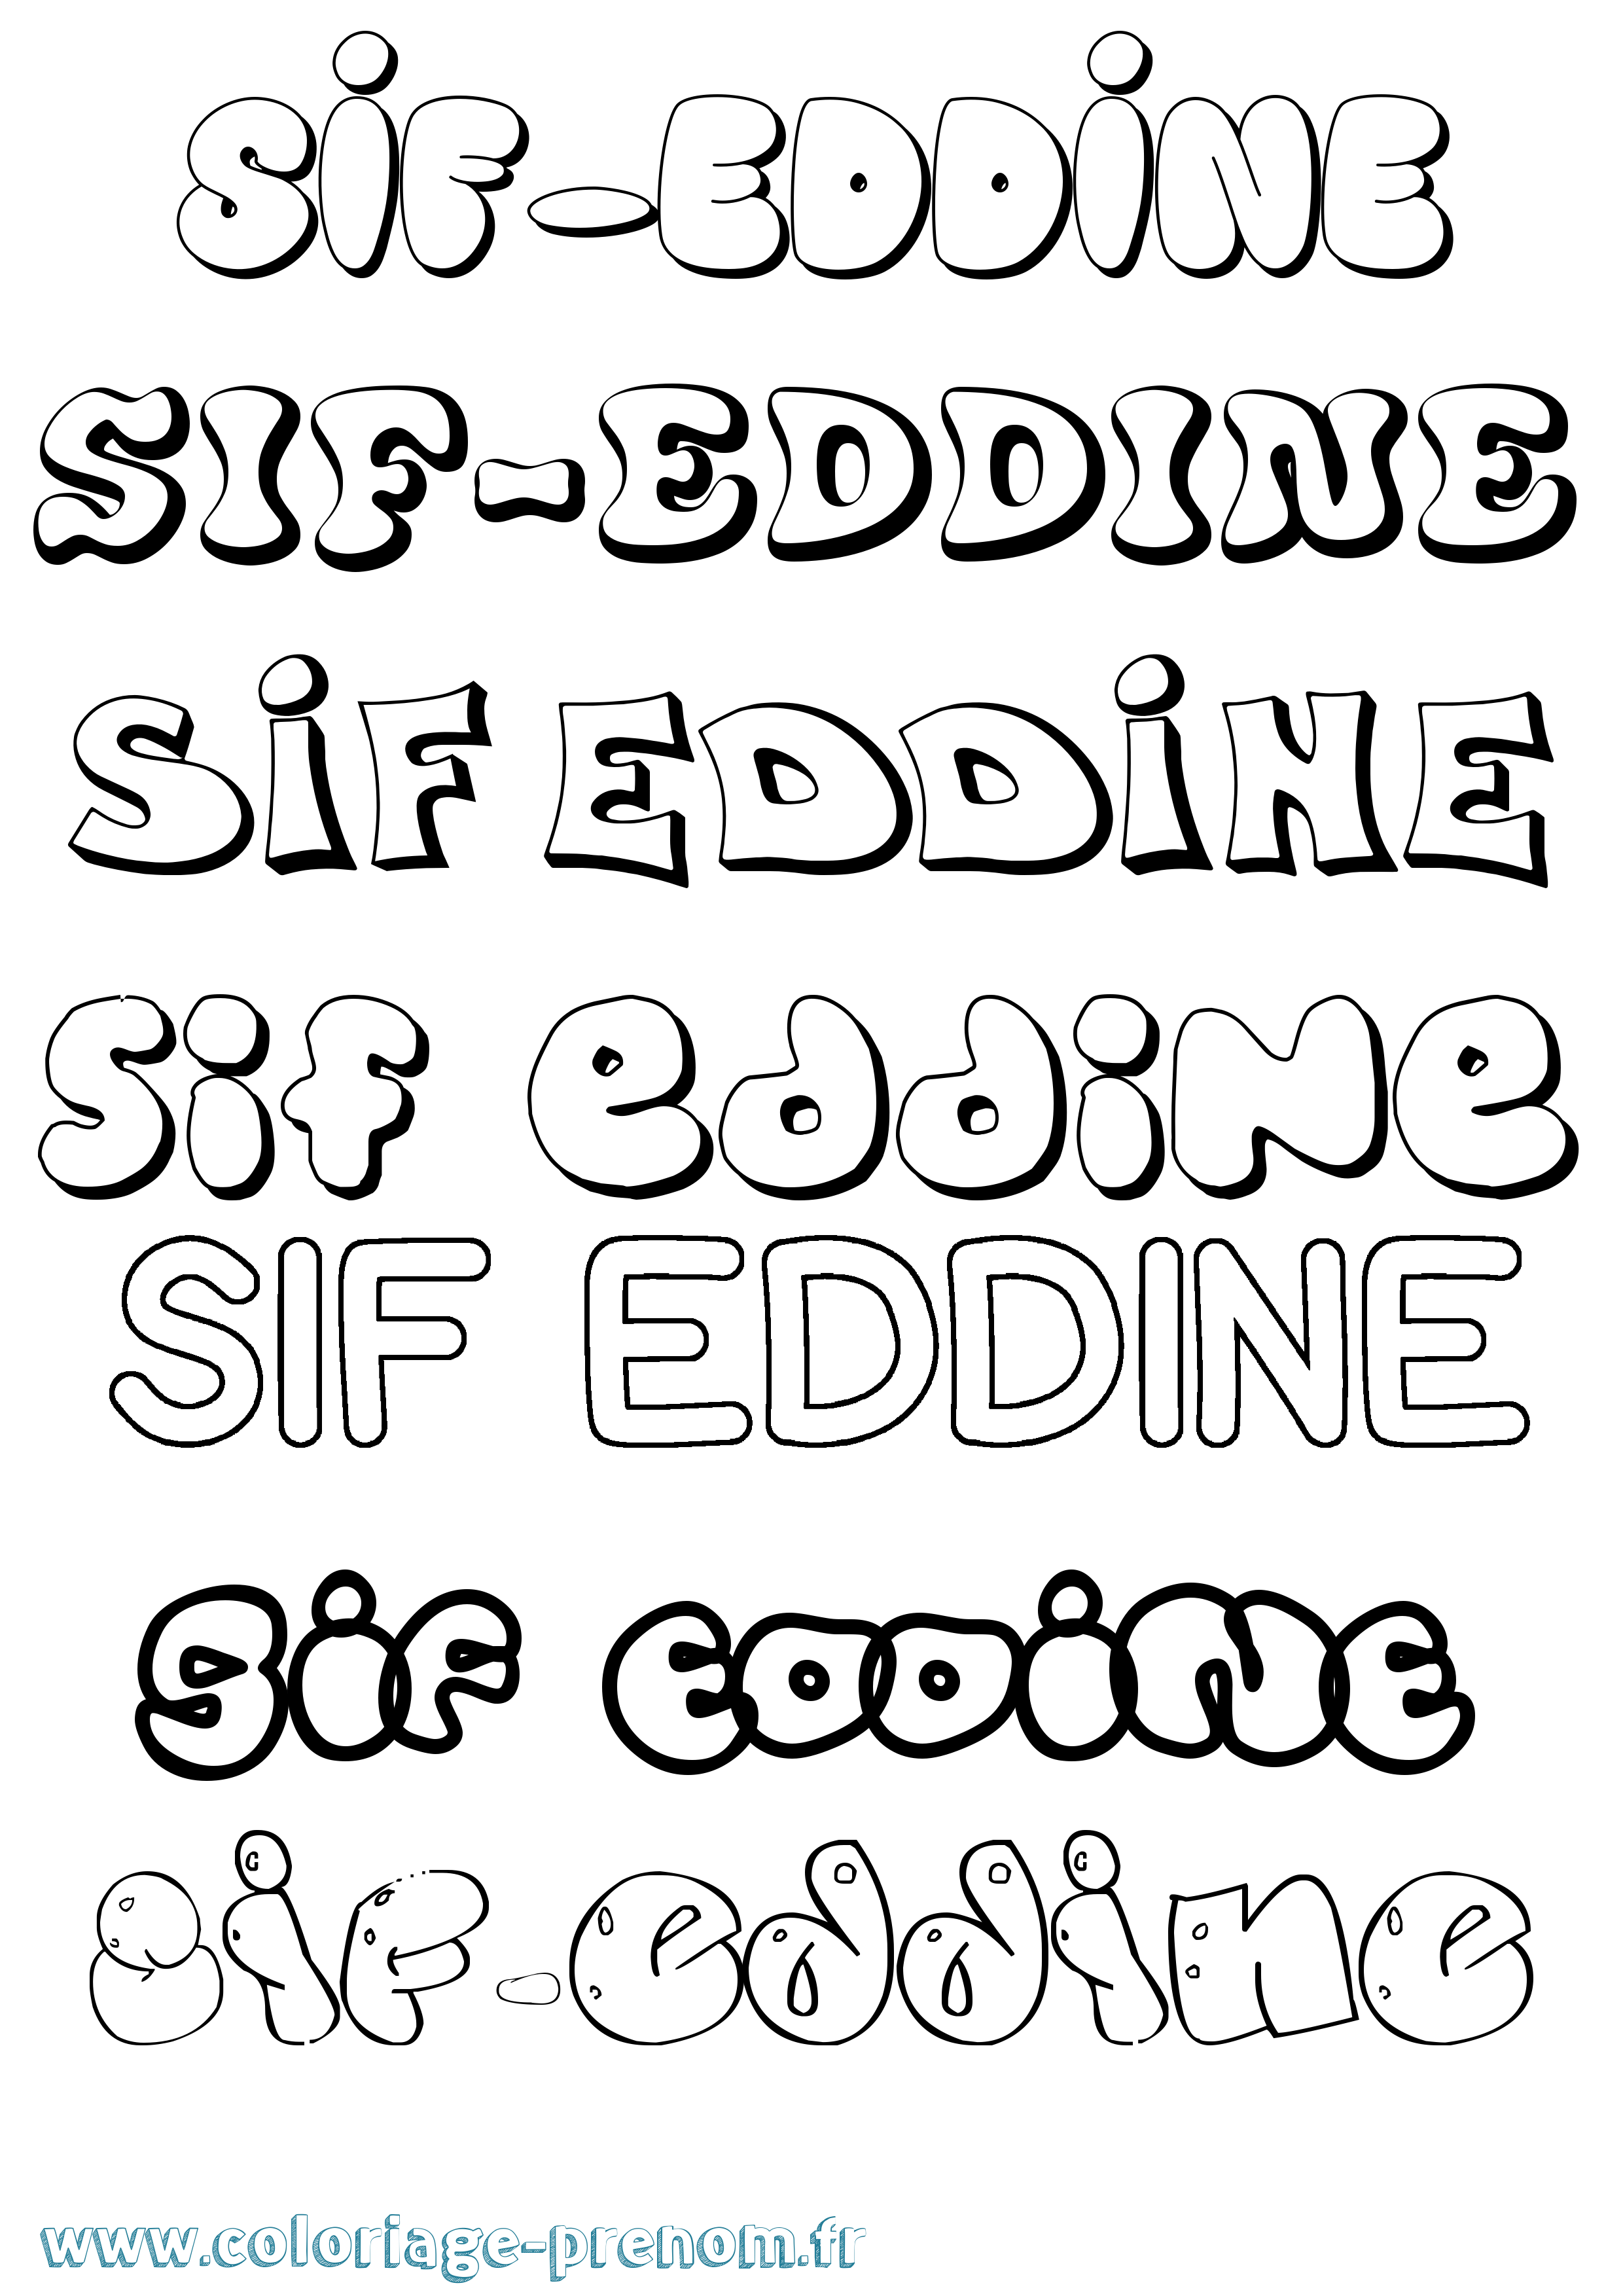 Coloriage prénom Sif-Eddine Bubble